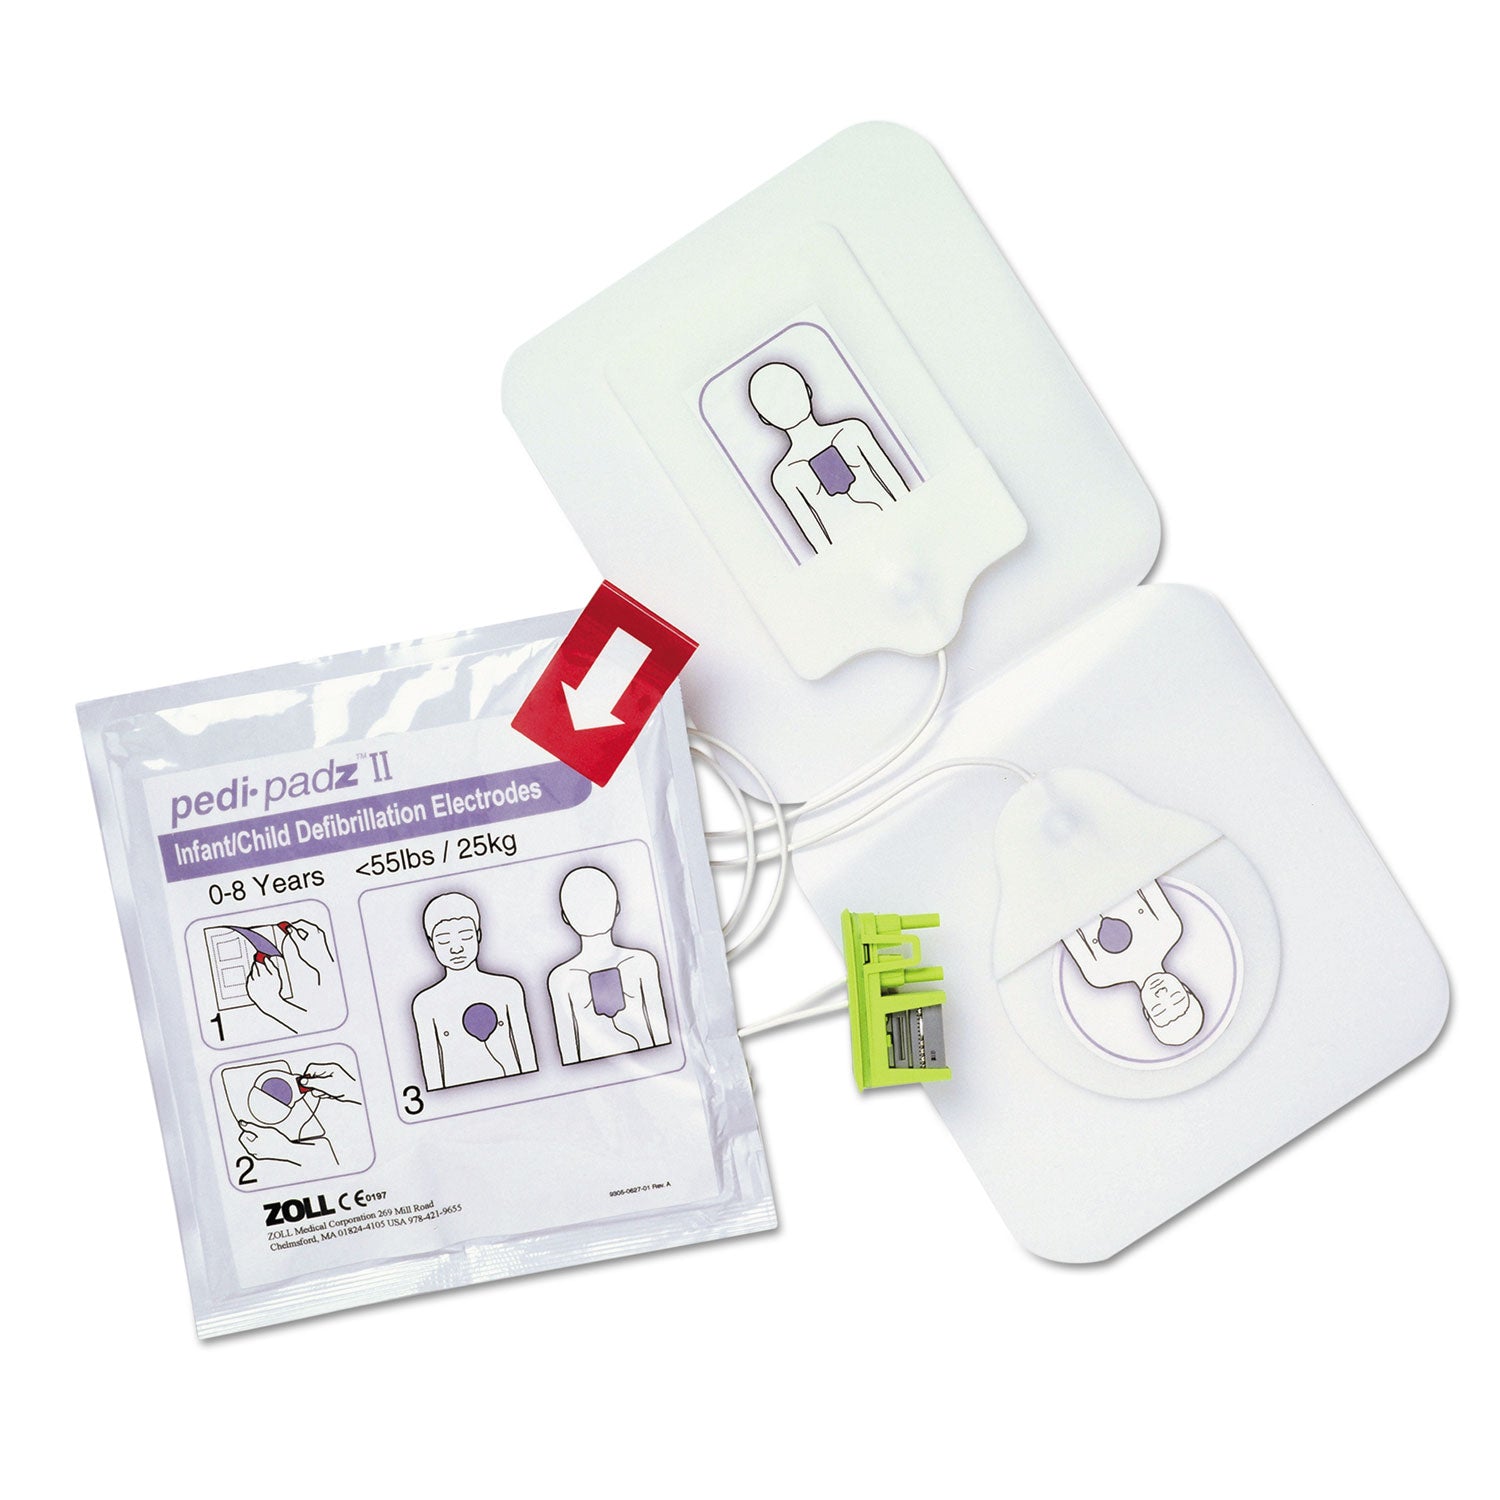 pedi-padz-ii-defibrillator-pads-children-up-to-8-years-old-2-year-shelf-life_zol8900081001 - 1